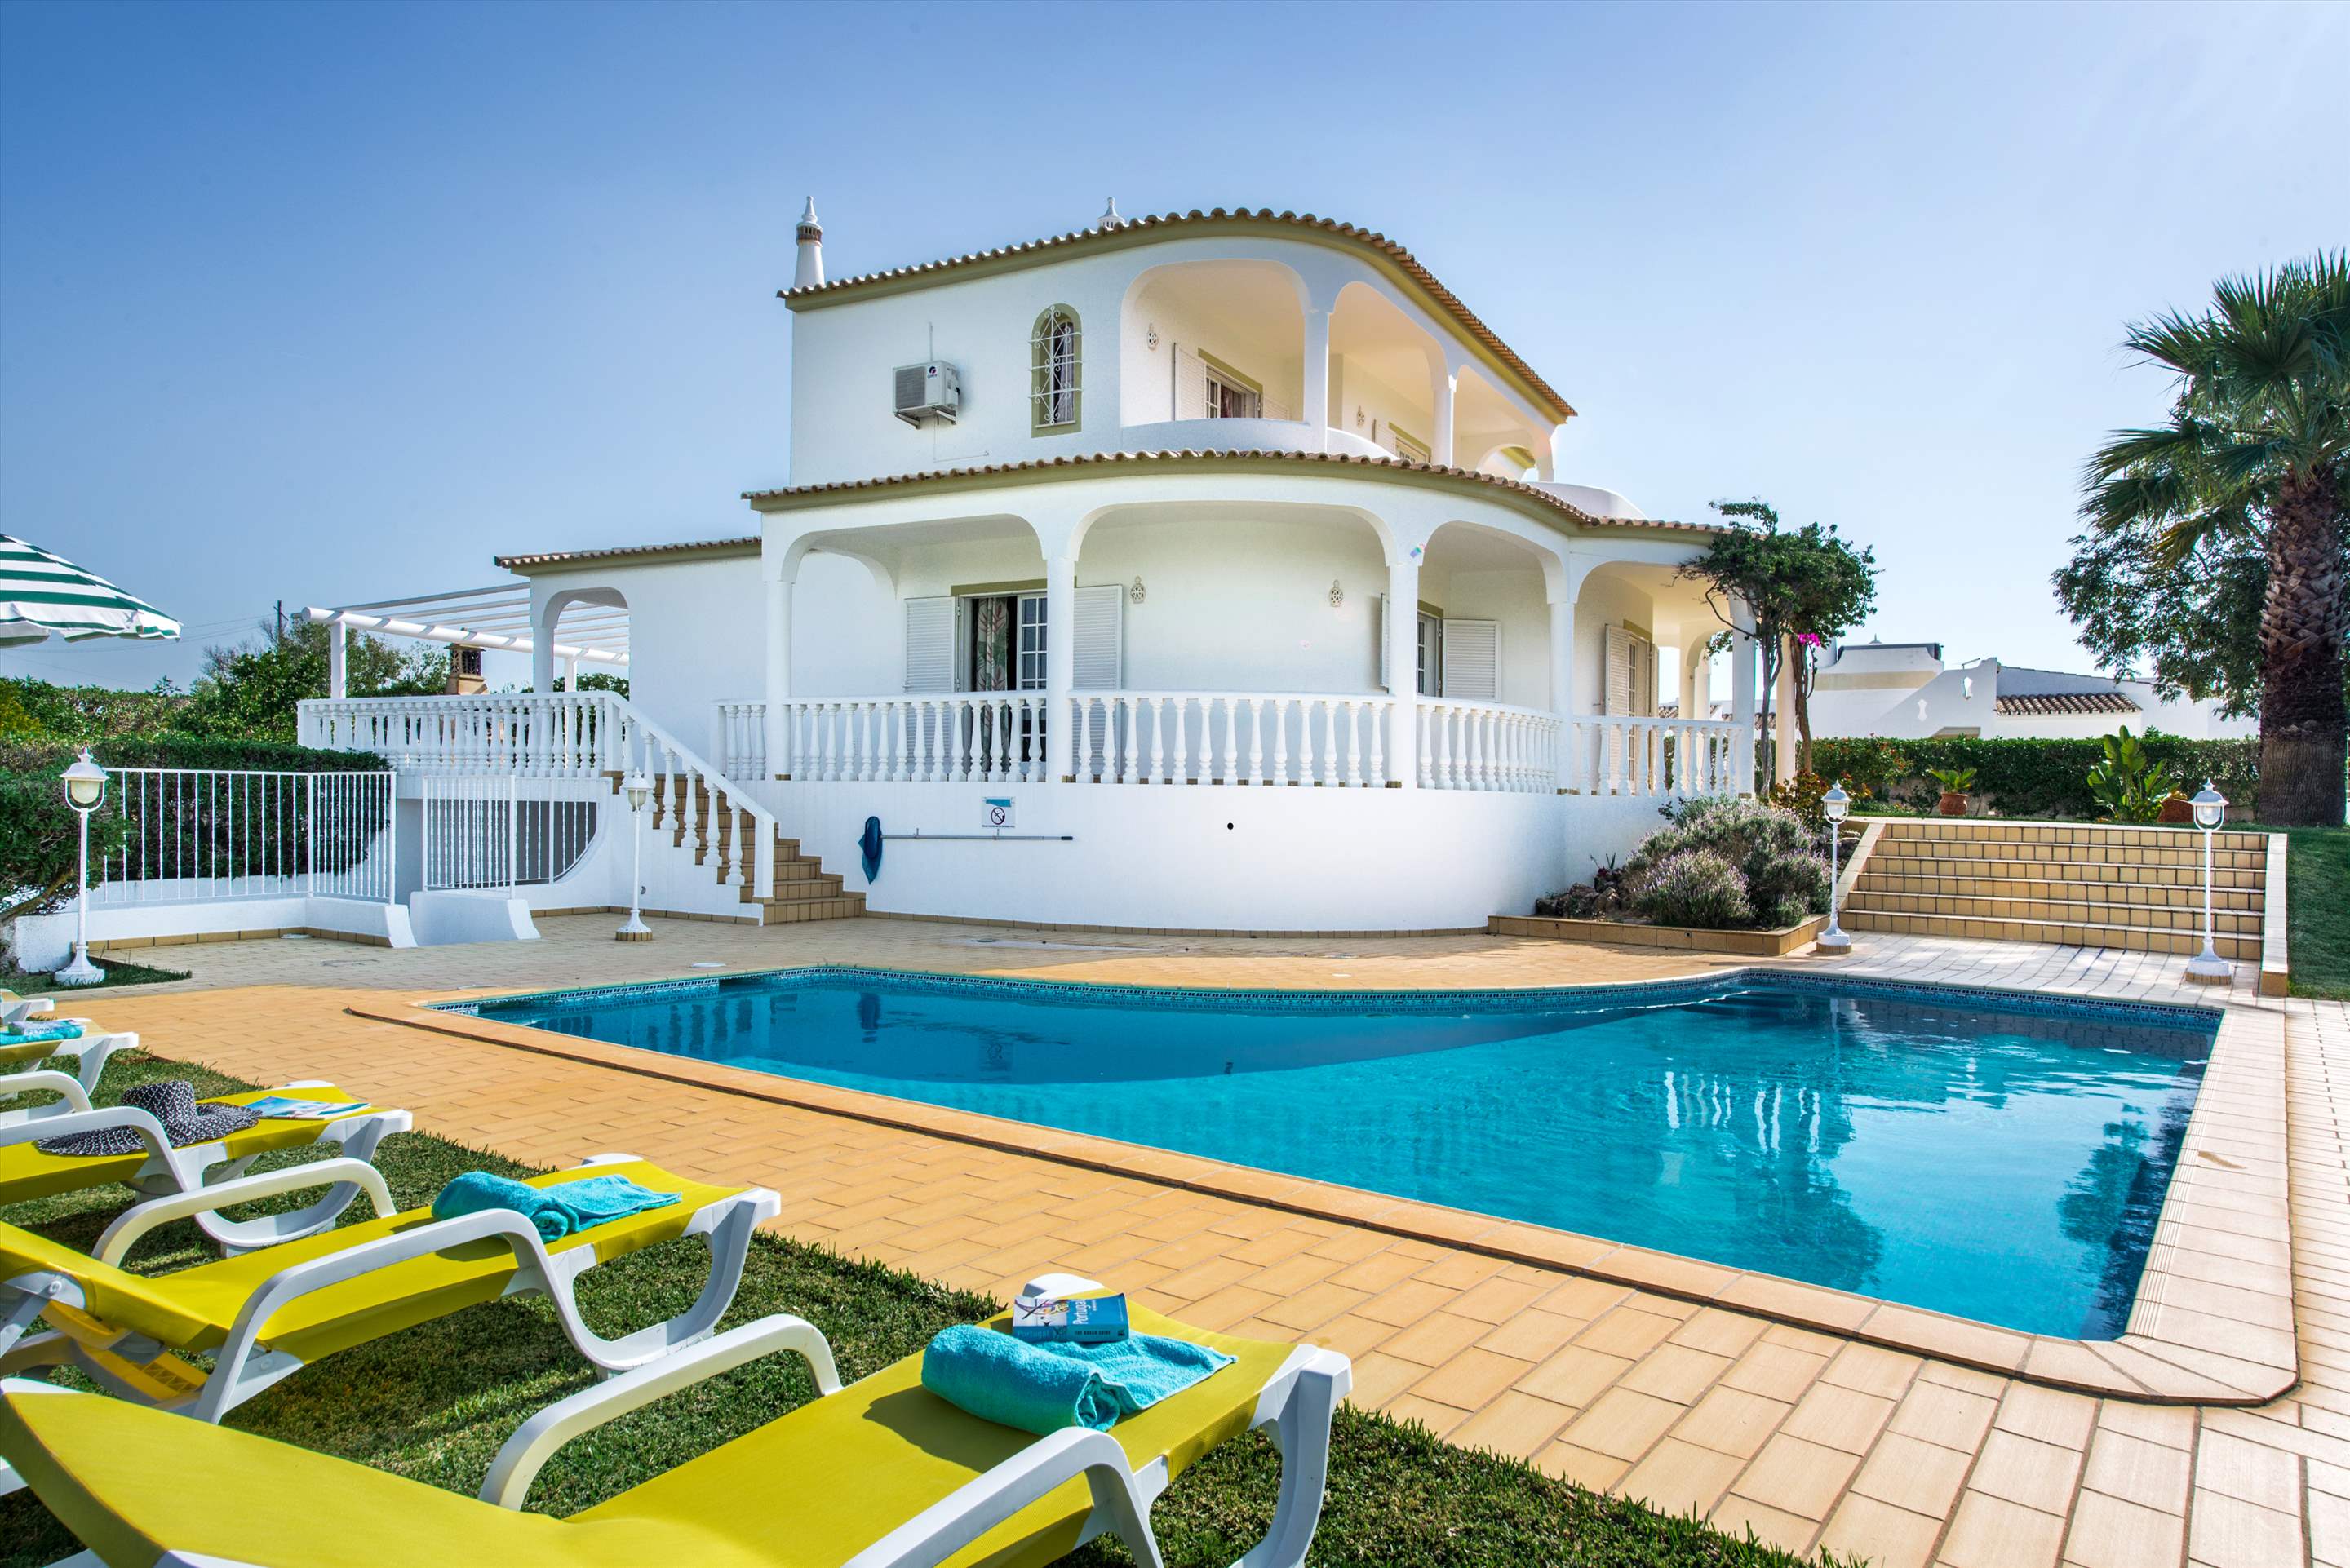 Villa Marco Real, 4 bedroom villa in Gale, Vale da Parra and Guia, Algarve